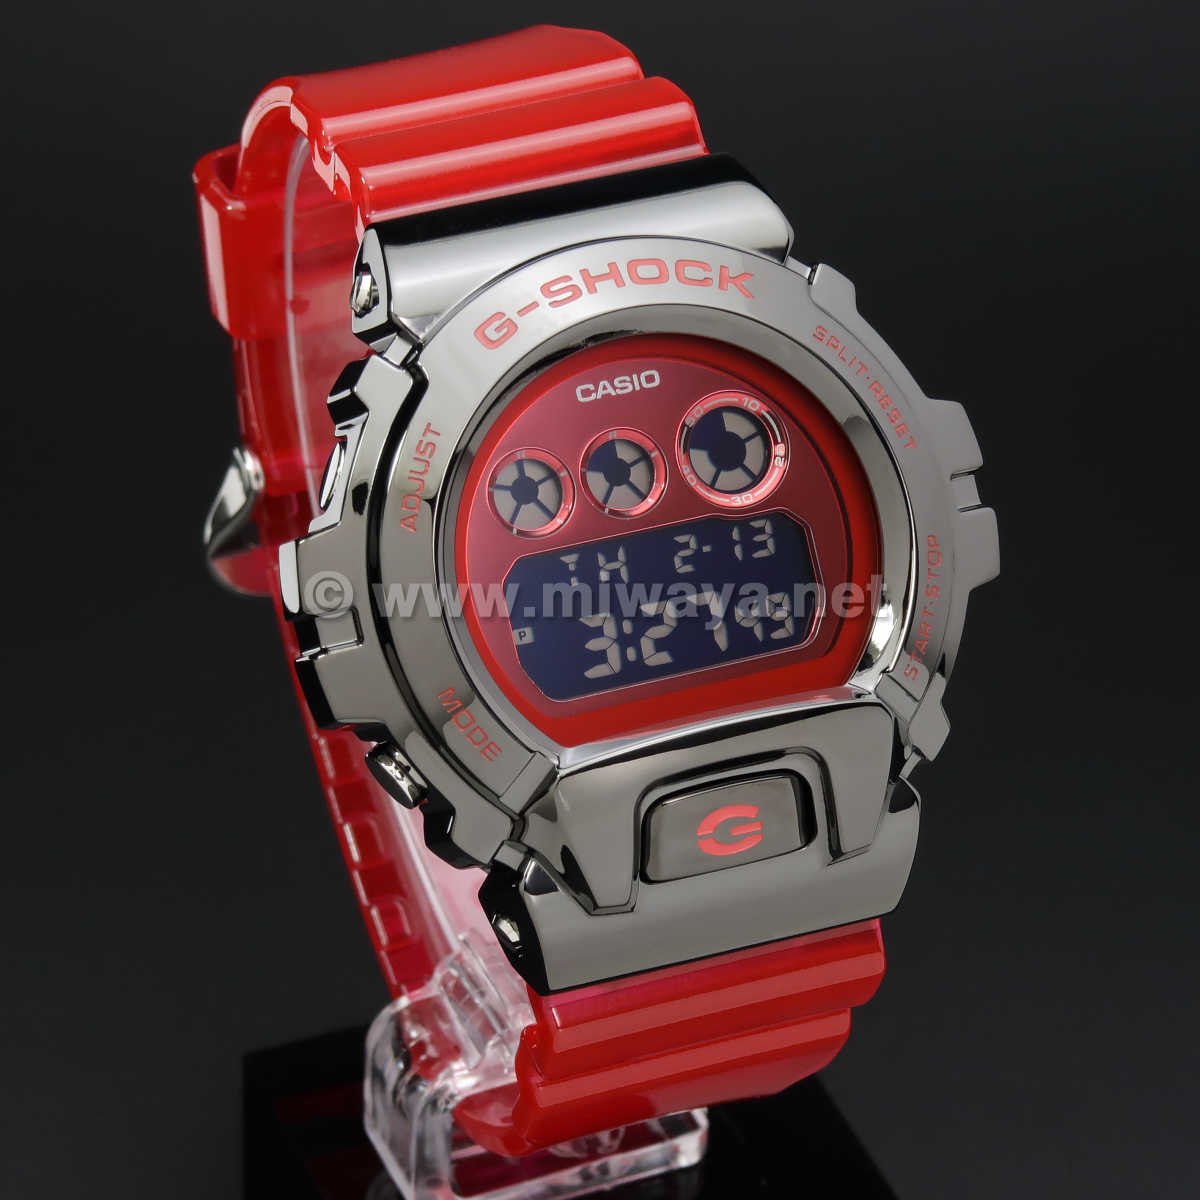 CASIOG-SHOCK GM-6900B-4JF - 腕時計(デジタル)